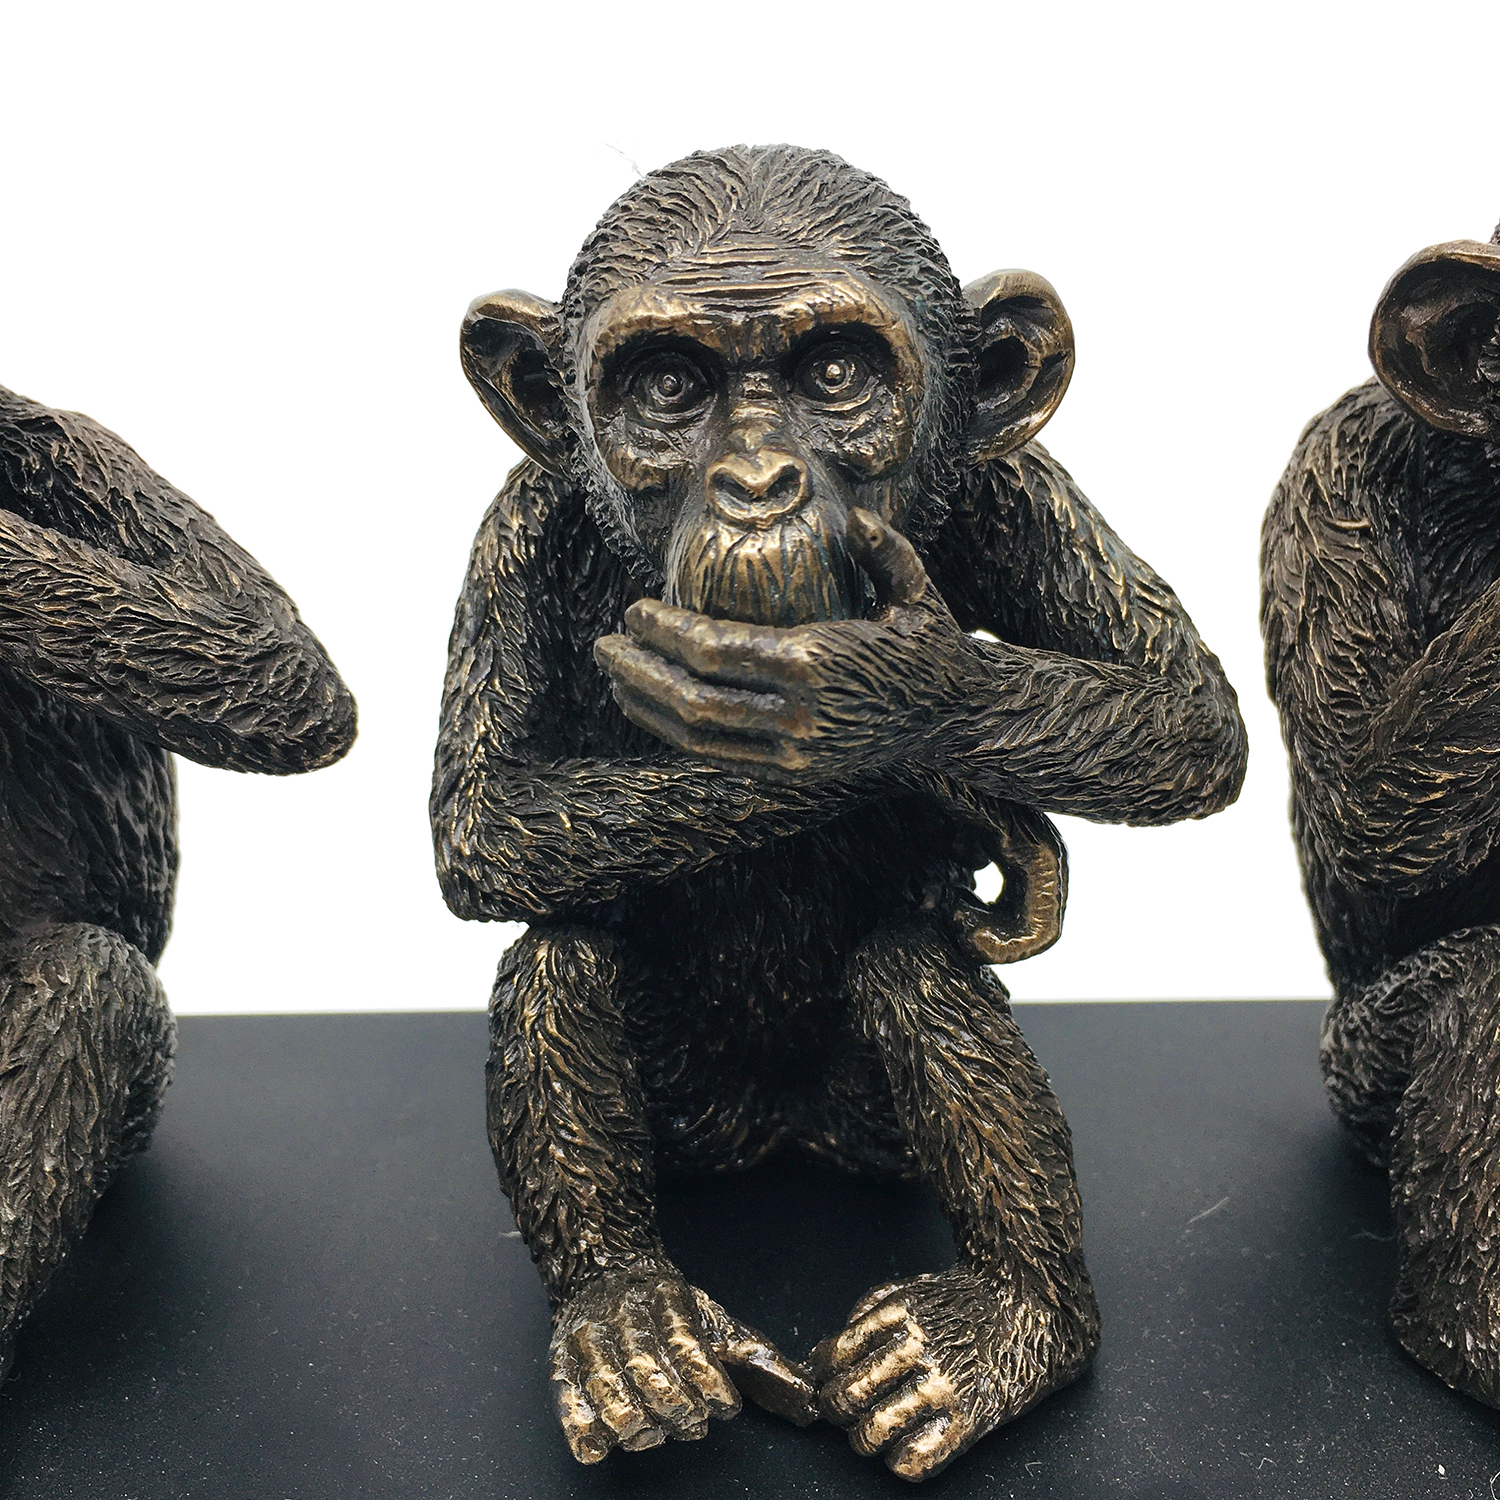 Three Monkeys Figurines